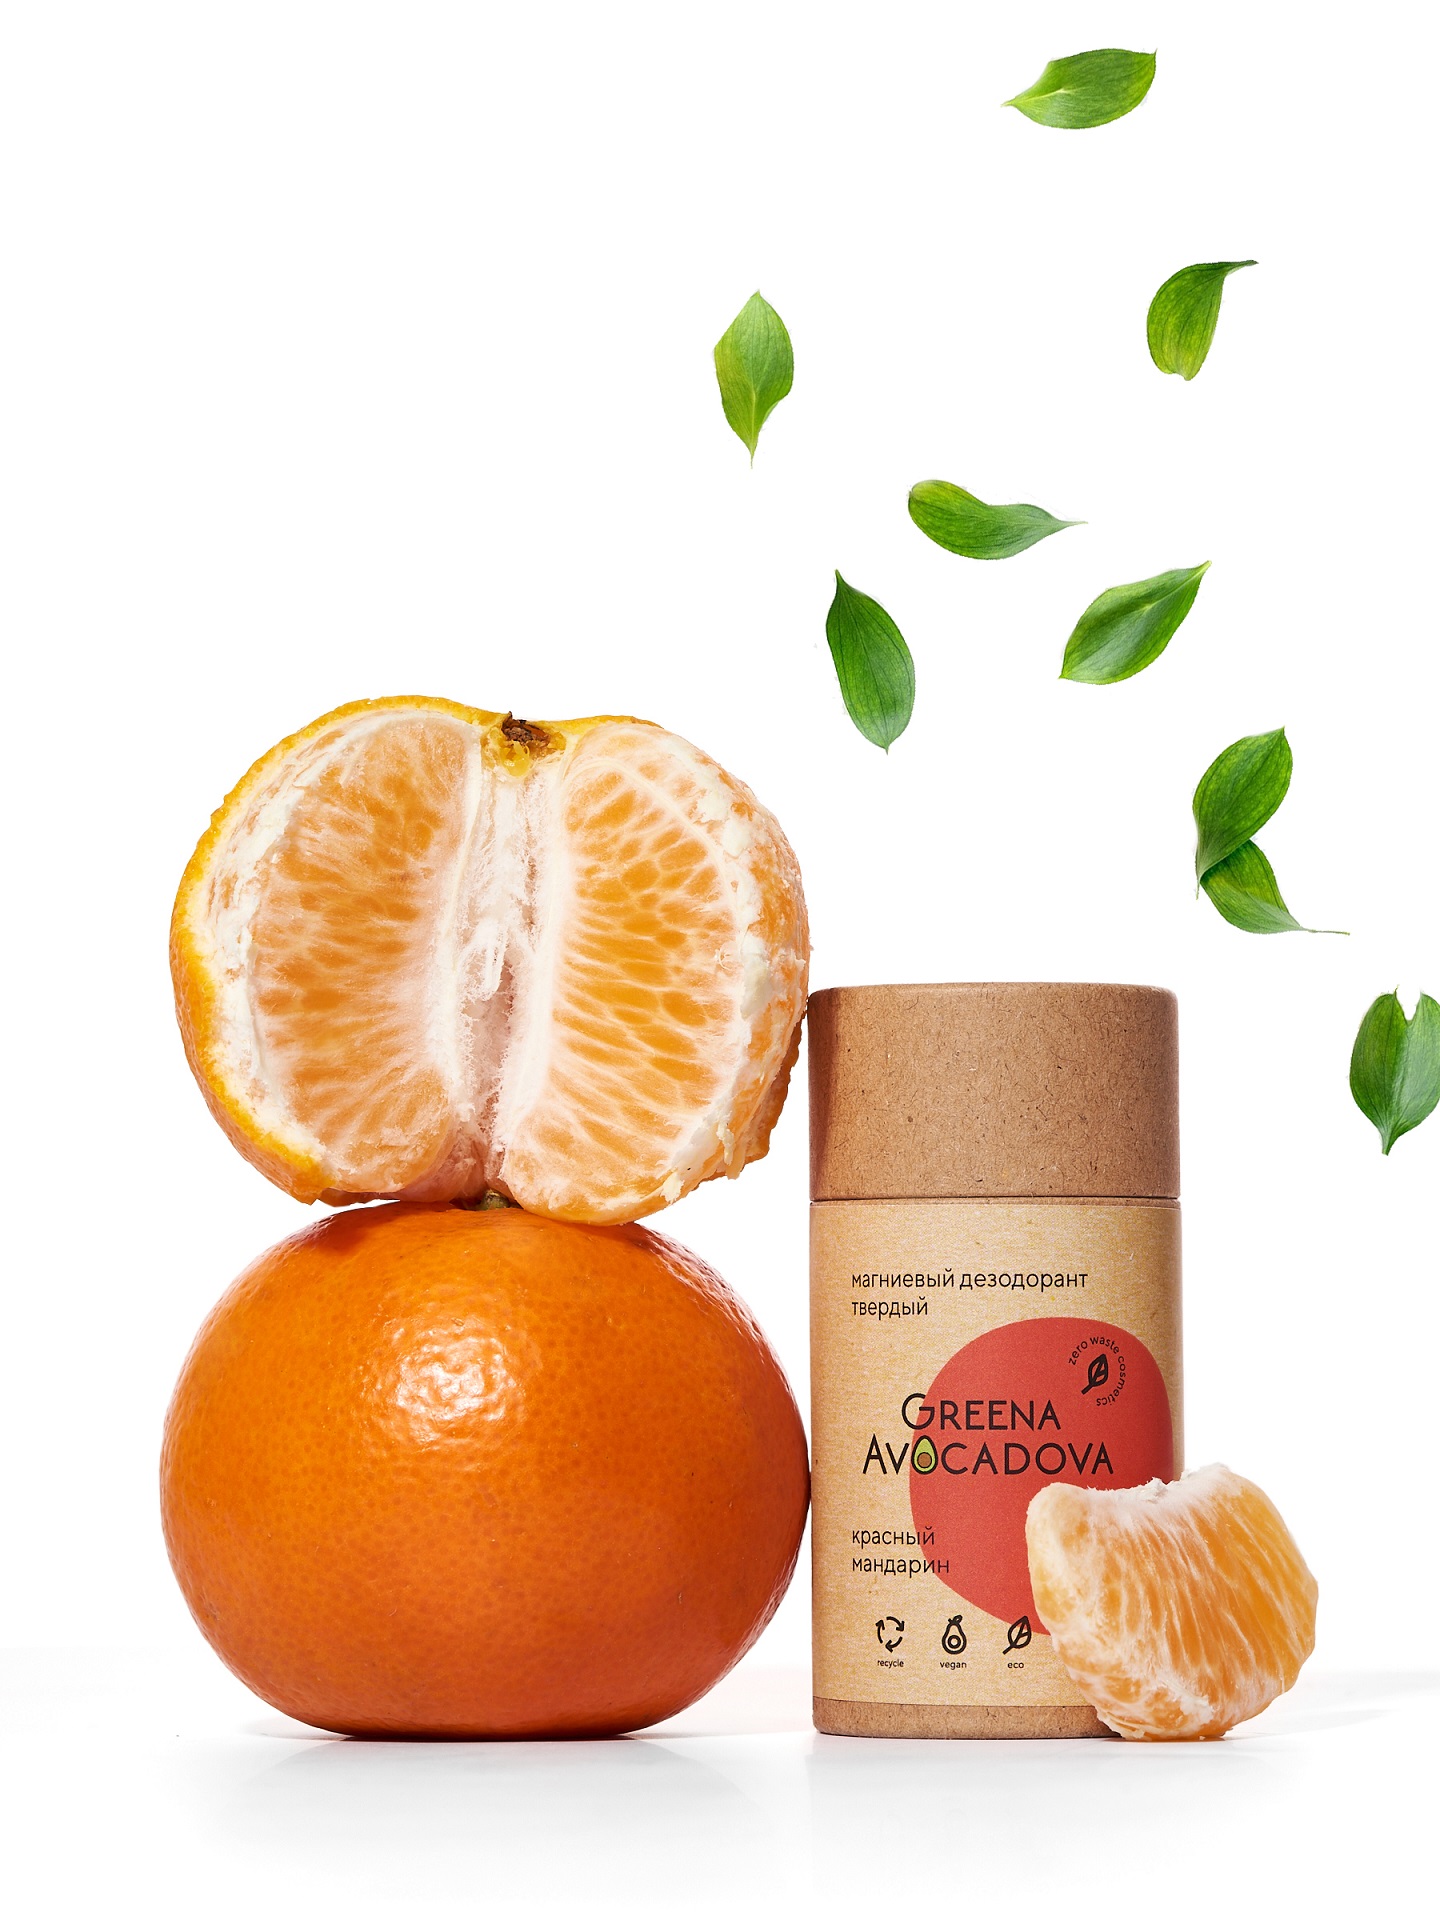 Натуральный твердый дезодорант Greena Avocadova Красный мандарин - фото 2